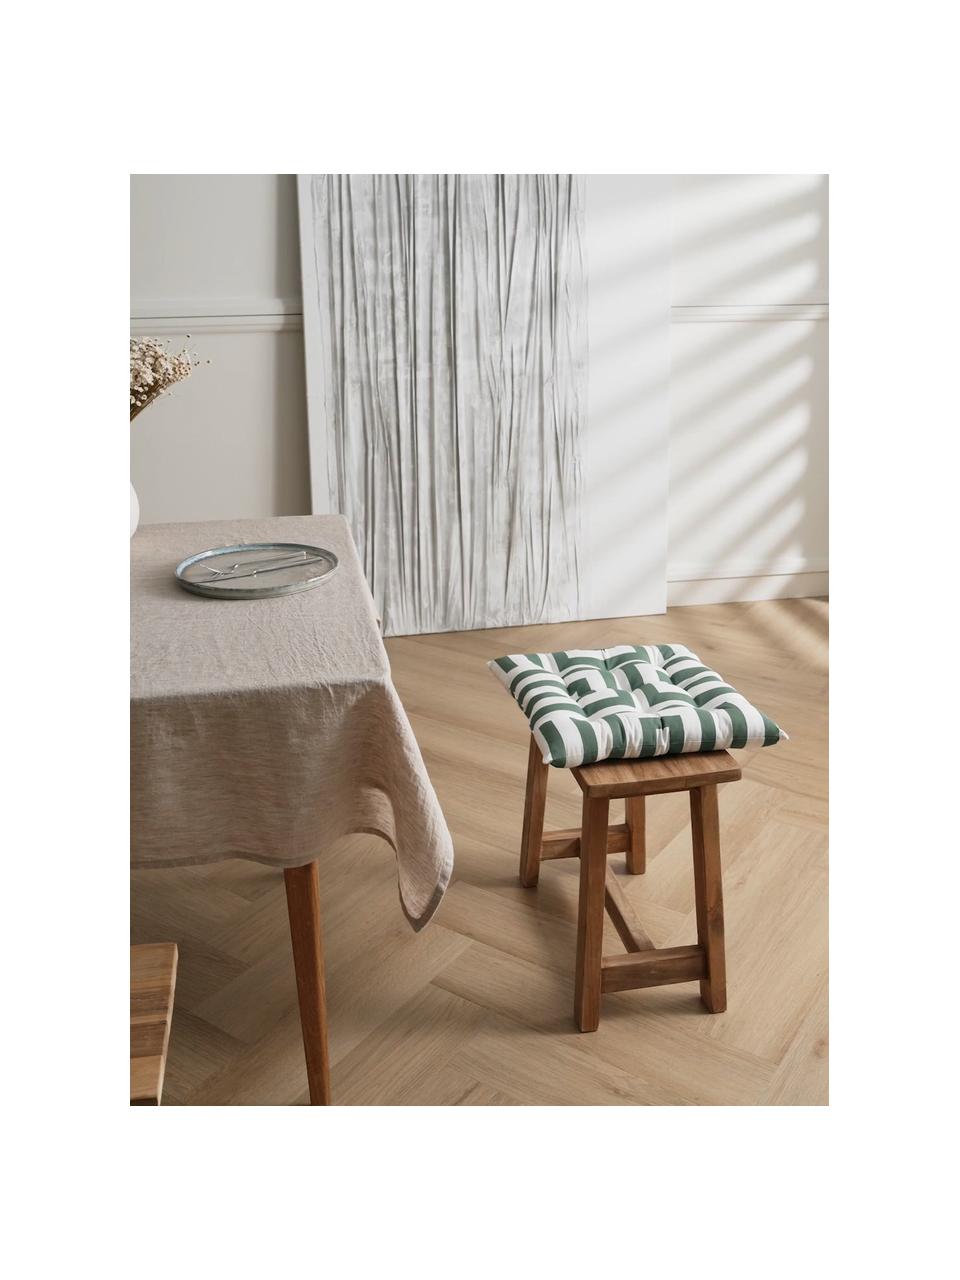 Baumwoll-Sitzkissen Bram mit grafischem Muster, Bezug: 100% Baumwolle, Dunkelgrün, Weiß, B 40 x L 40 cm